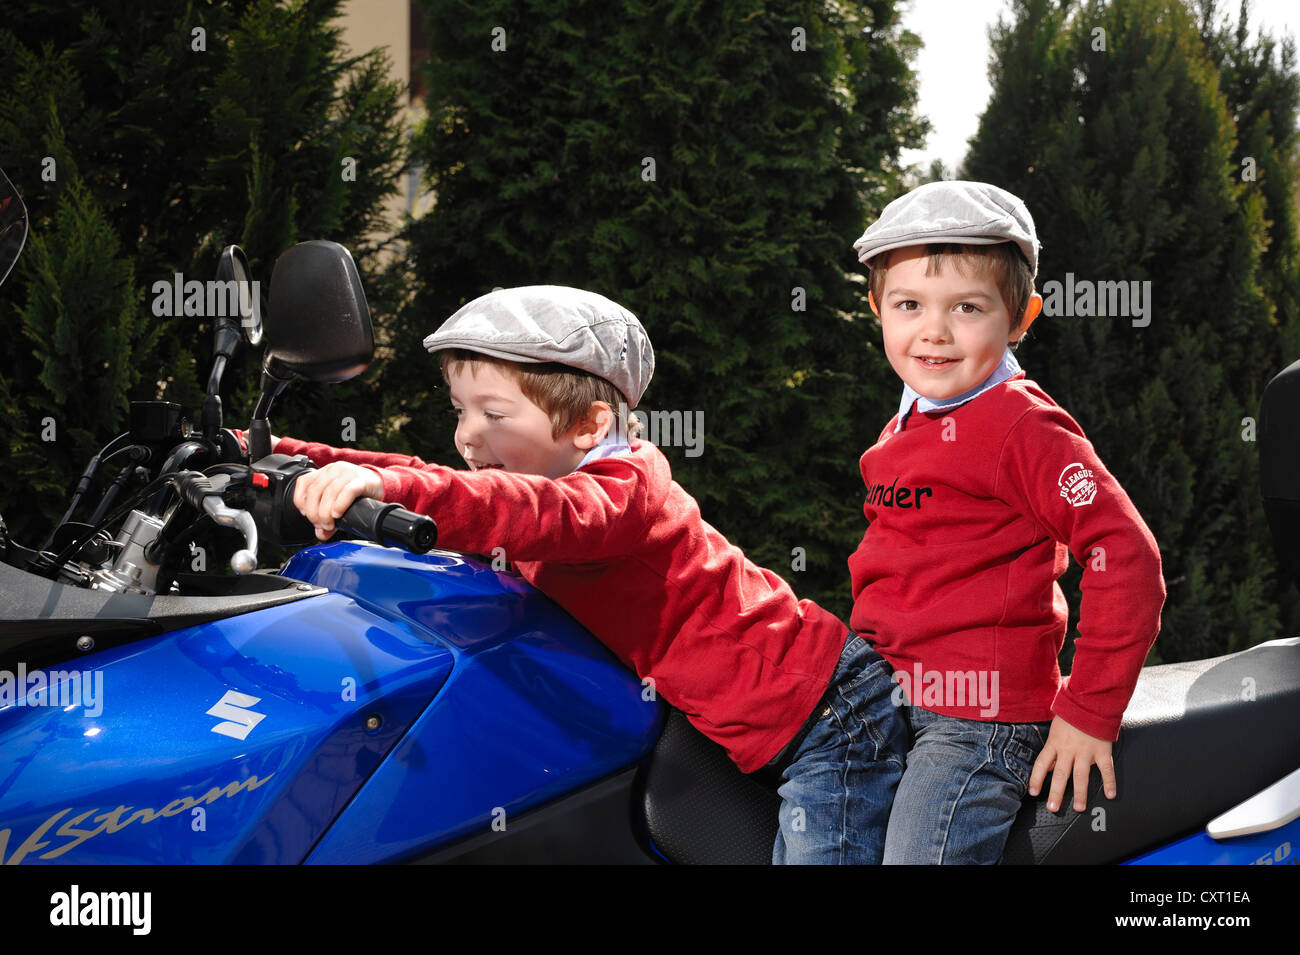 Gemelos, 4, usando tapones planos mientras están sentados juntos en una motocicleta azul Foto de stock